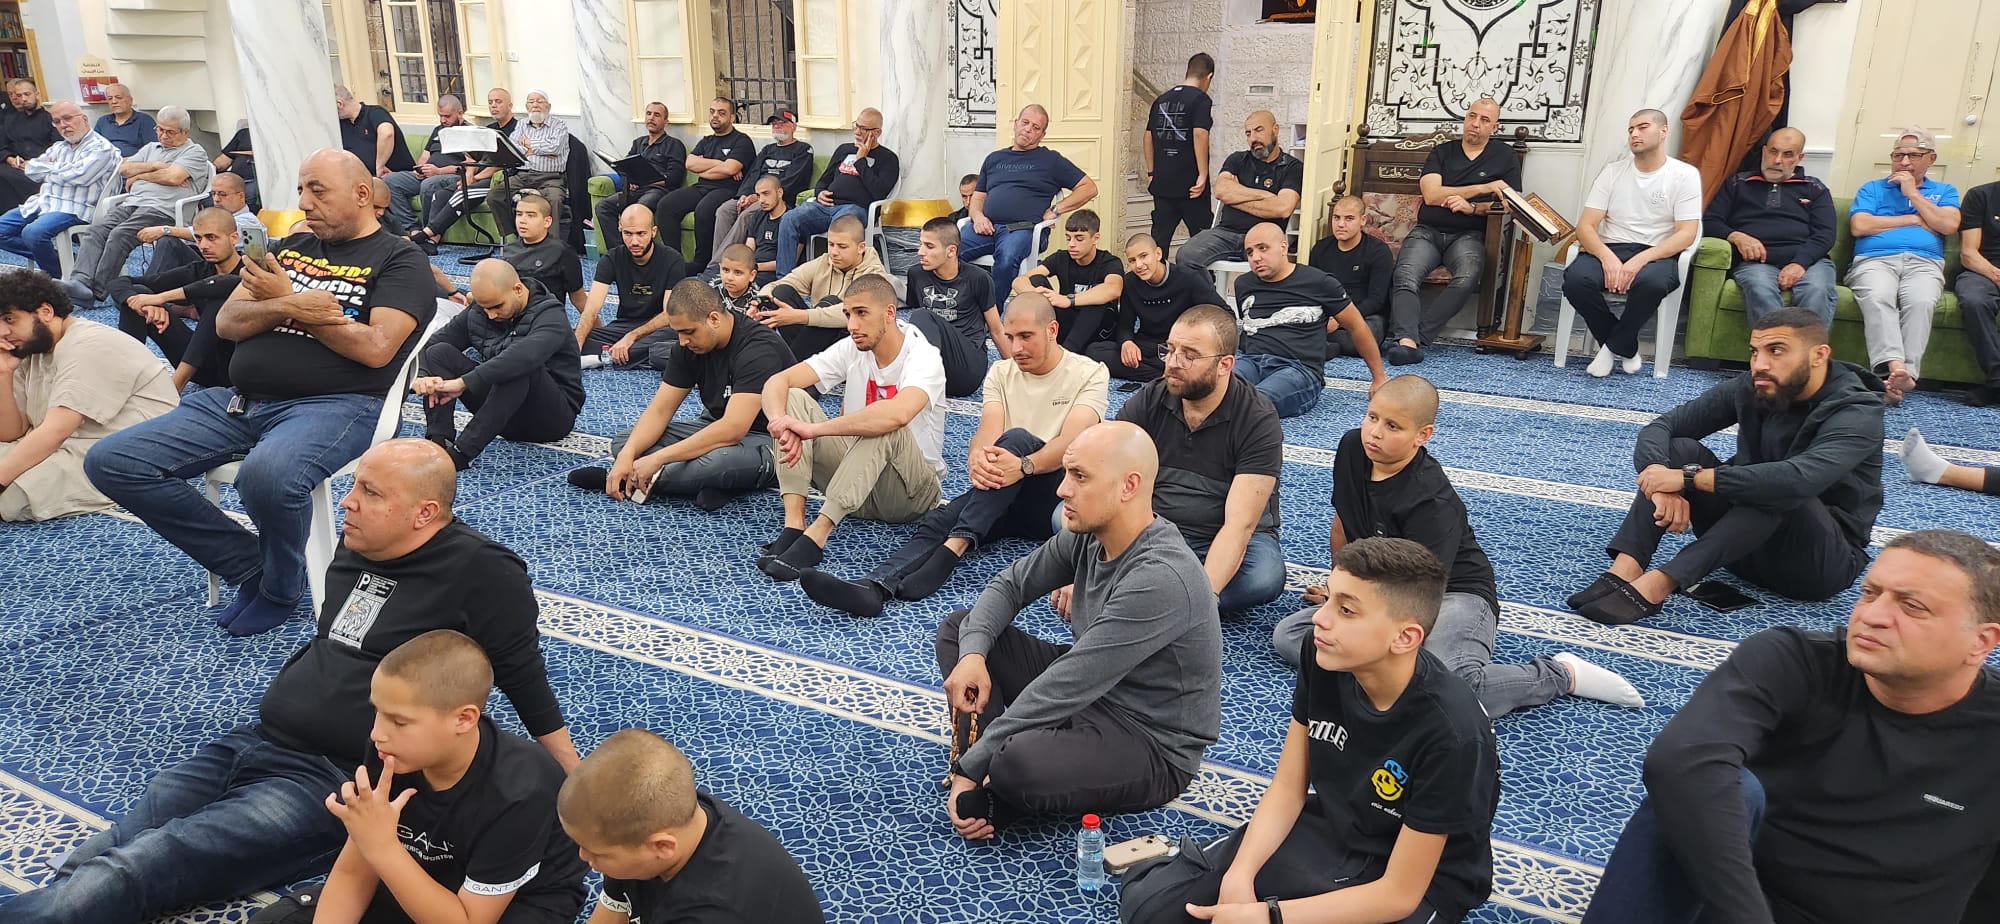 يافا: بالصور أمسية إيمانية عن روح المظلوم يعقوب طوخي في مسجد النزهة